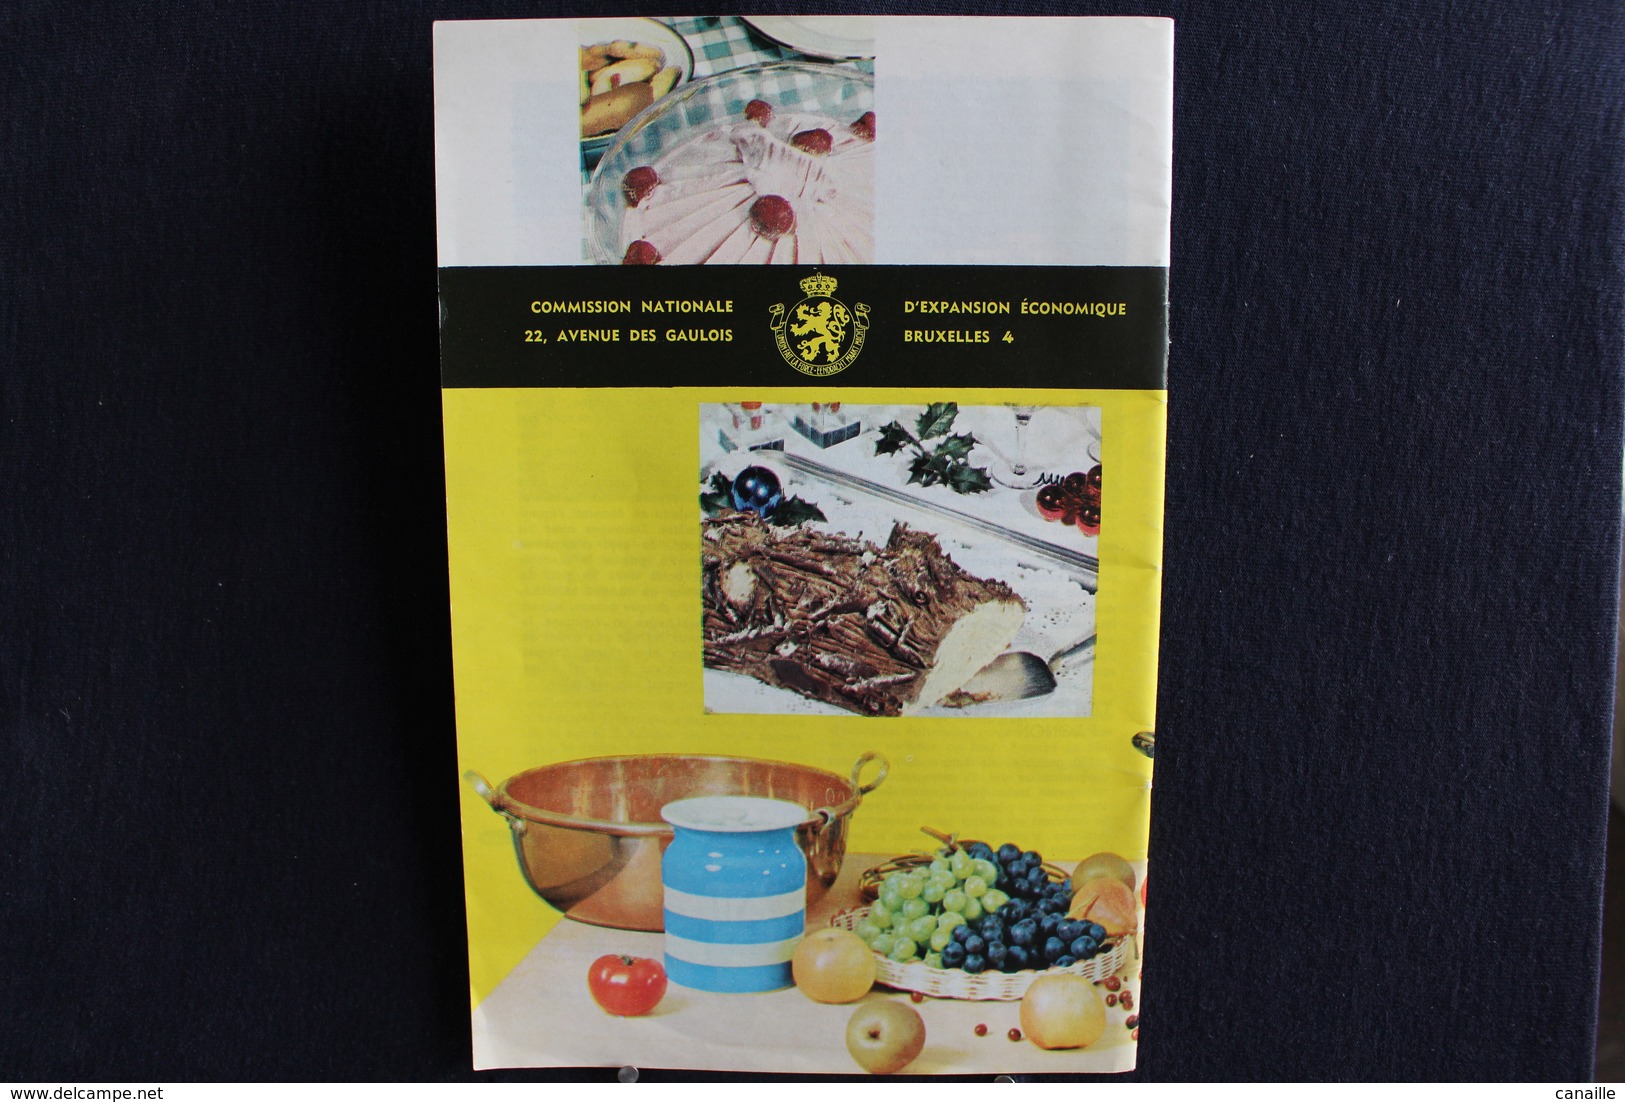 Publicités ( 5 )  - Livret De Cuisine - Par Gaston Clément - Fruits Et Gourmandises  -  Forma 13x20 Cm 15 Page - Cucina & Vini